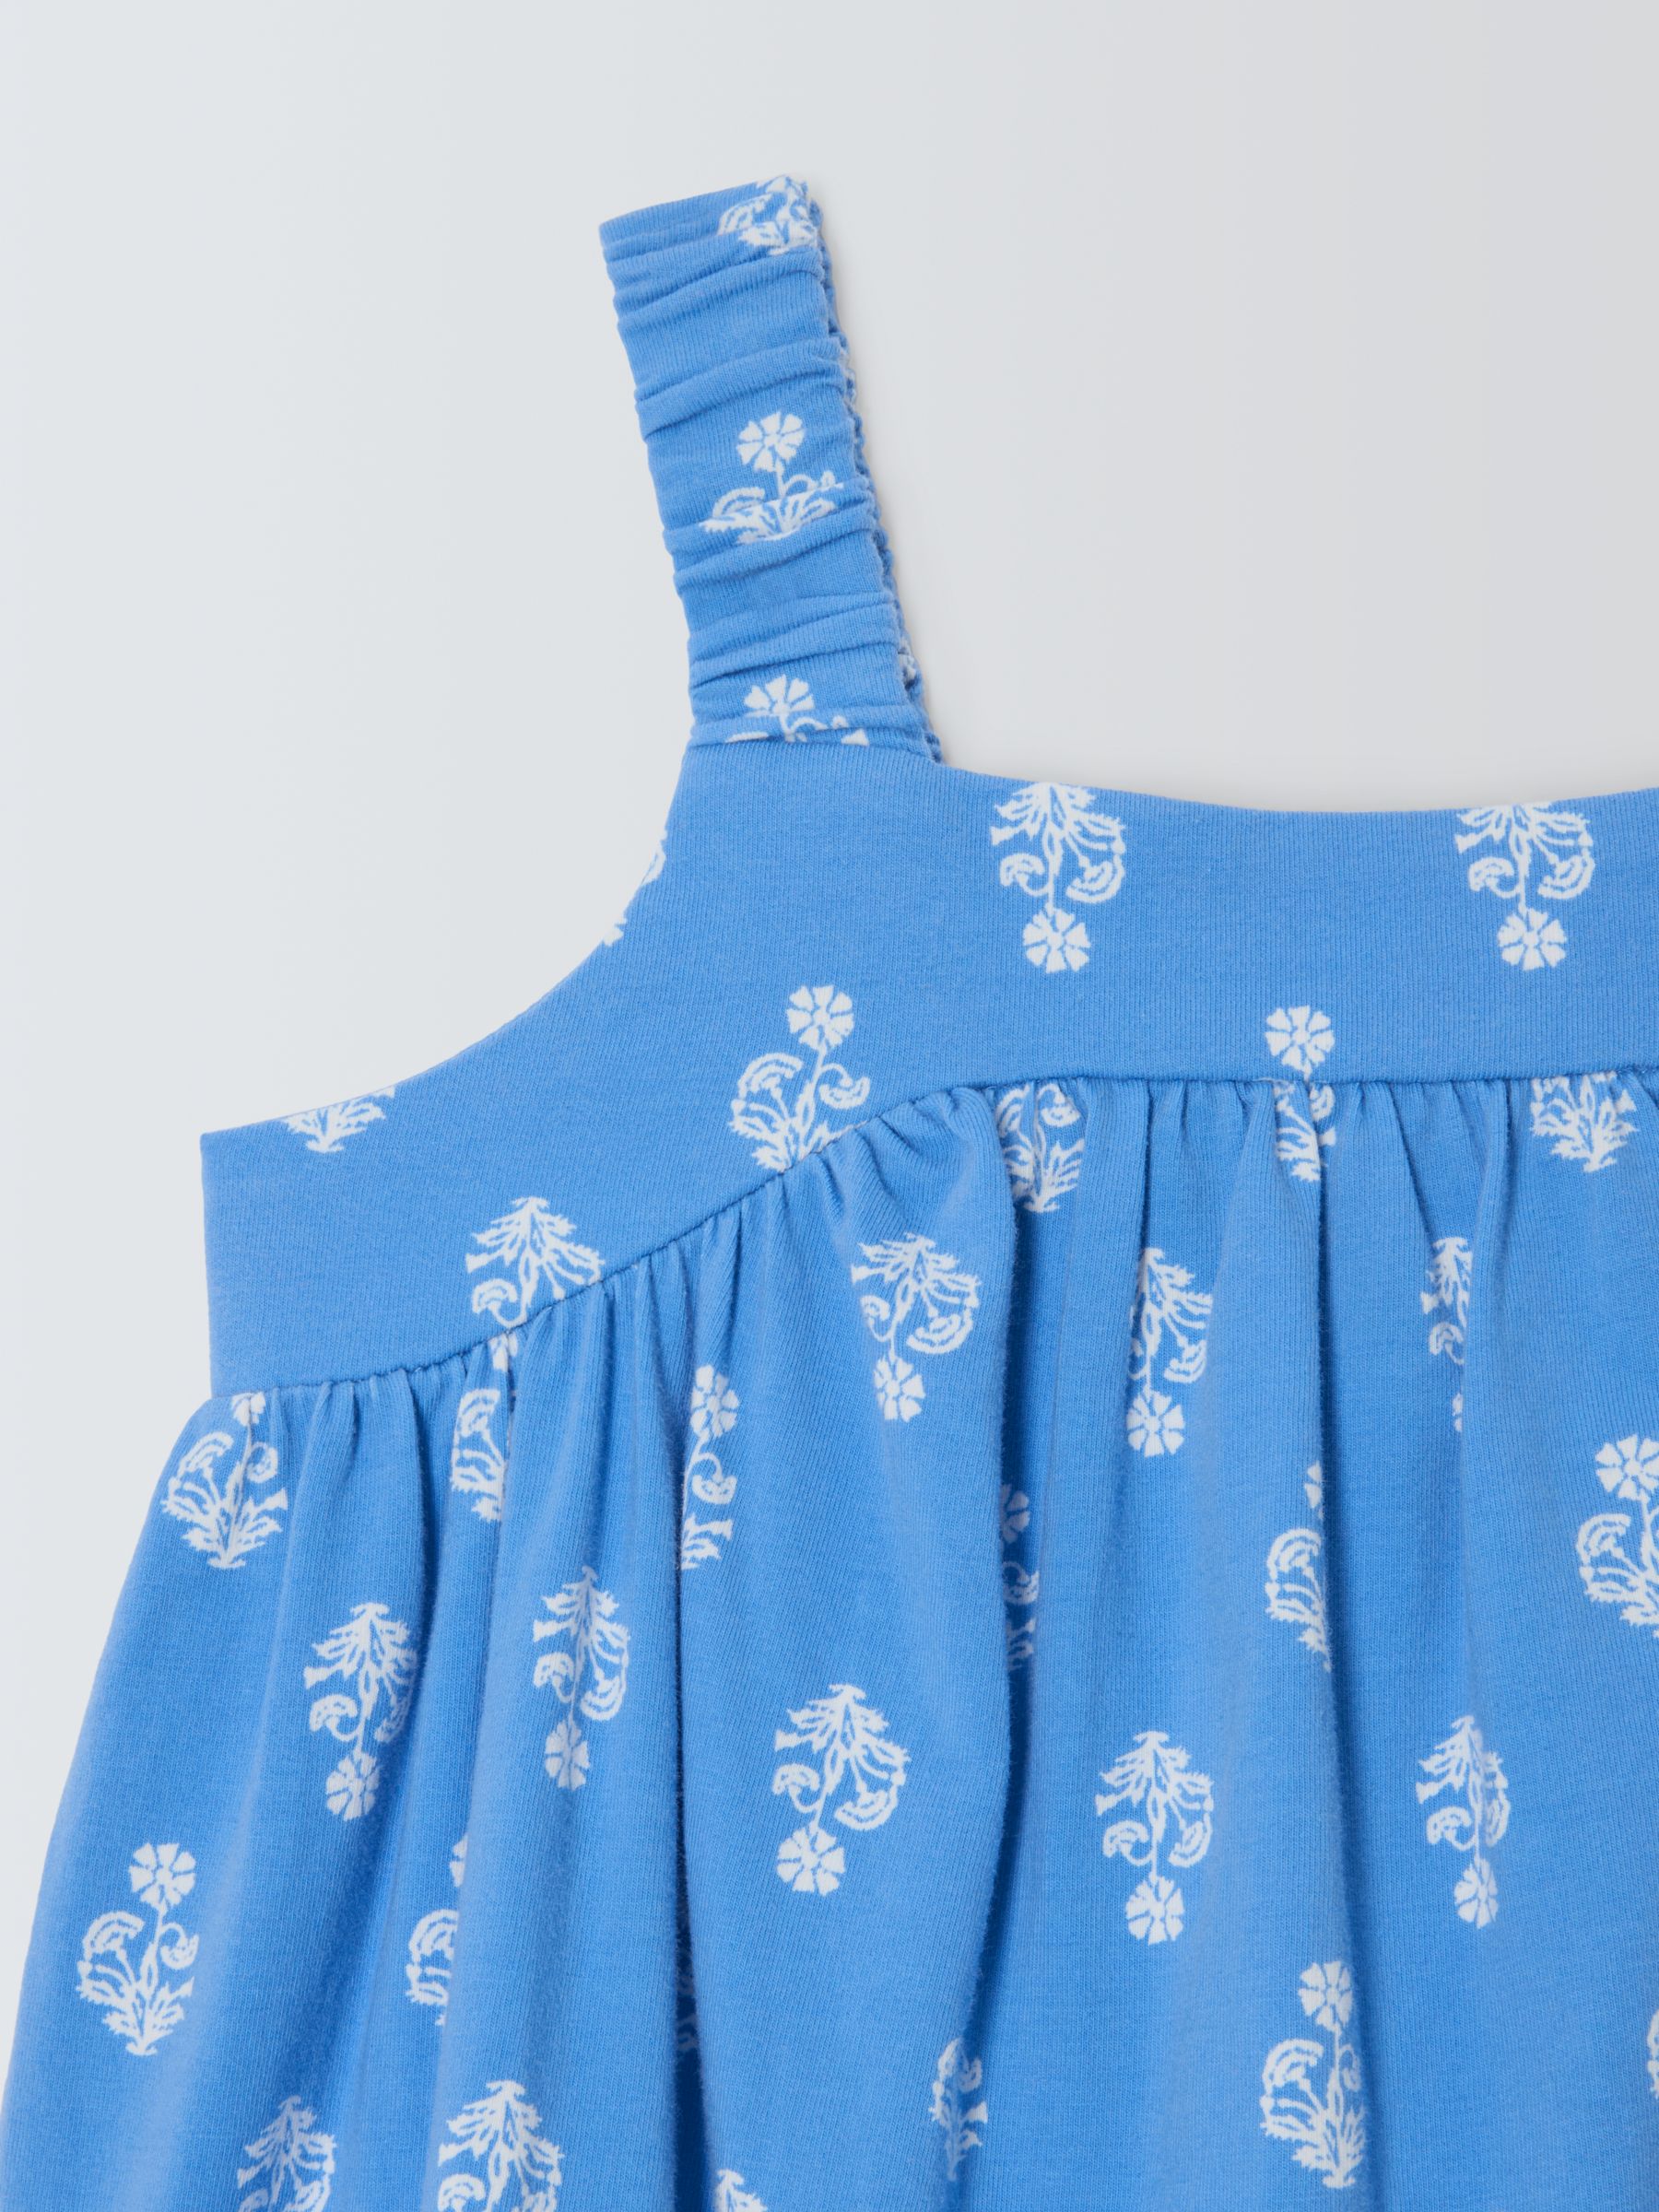 John Lewis Kids' Flower Jersey Swing Dress, Blue, 3 years